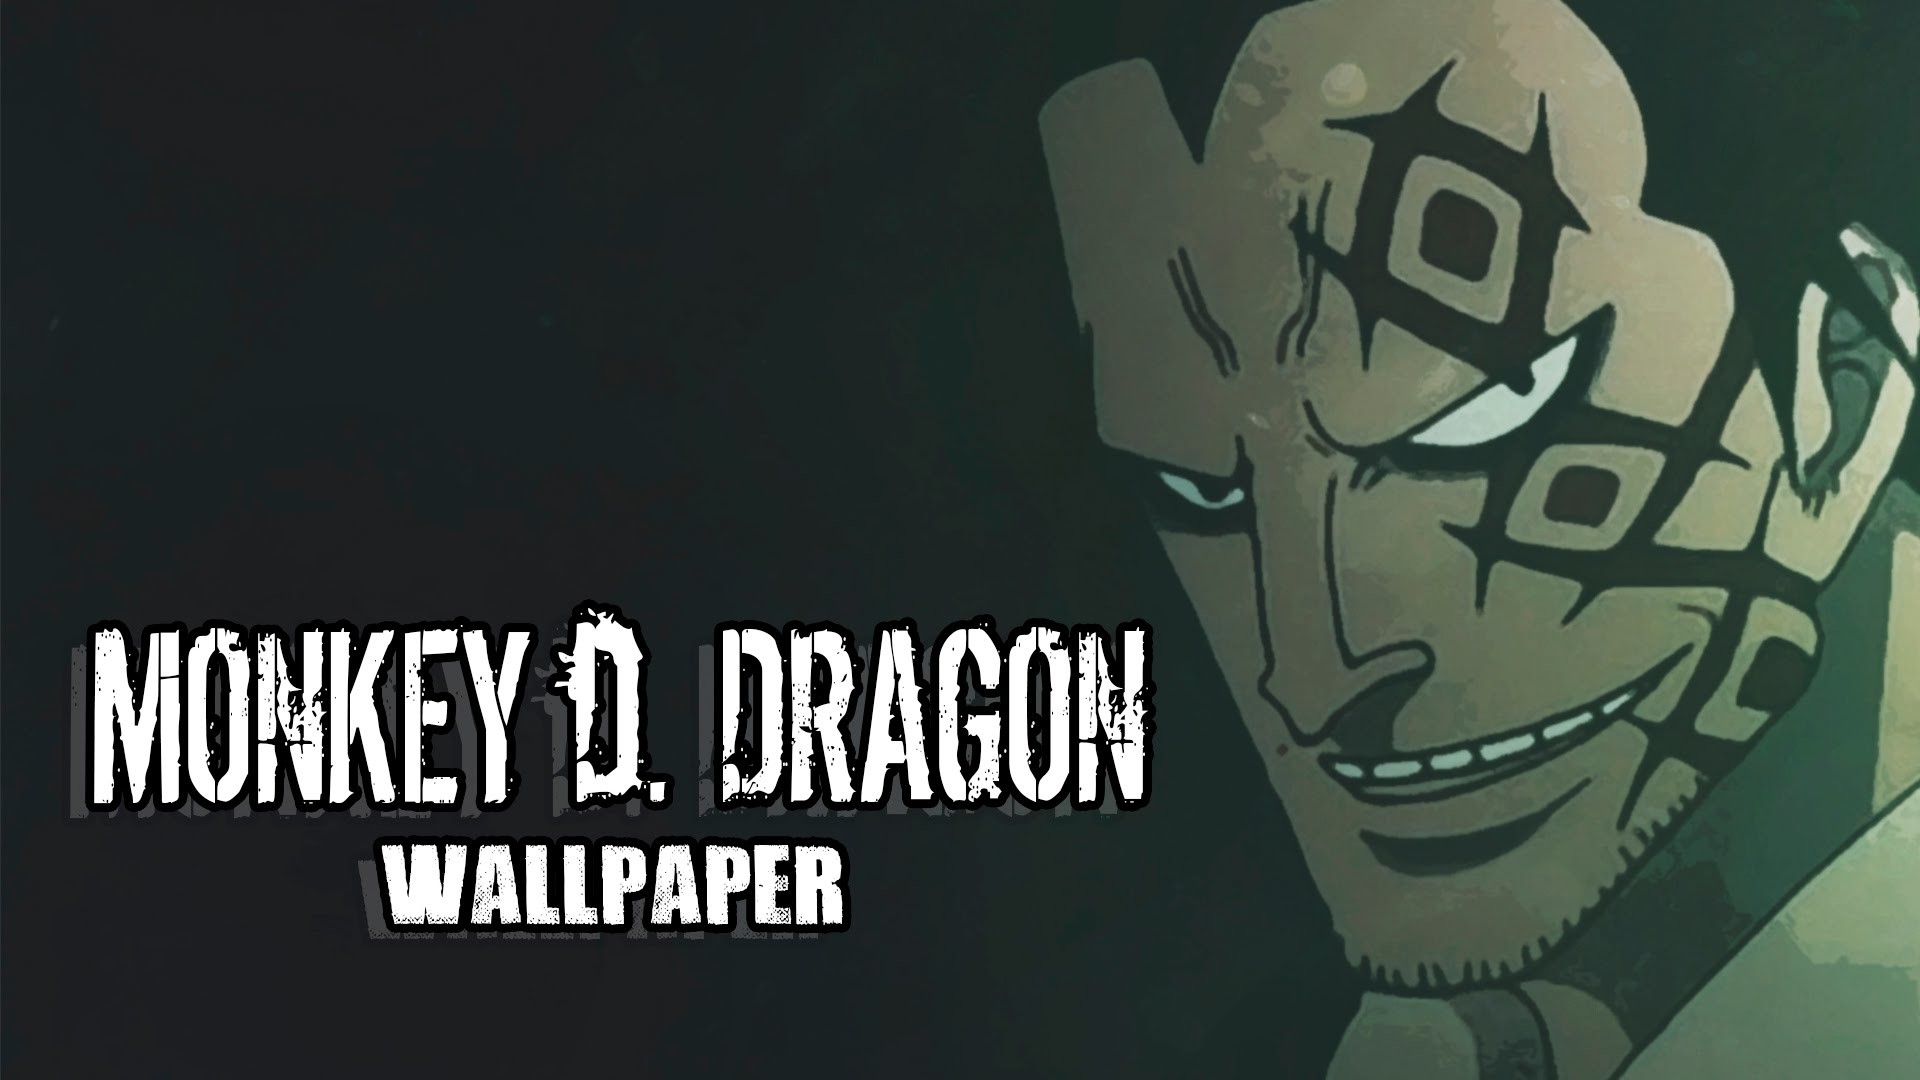 1920x1080 Wallpaper - Monkey D. Dragon - One Piece